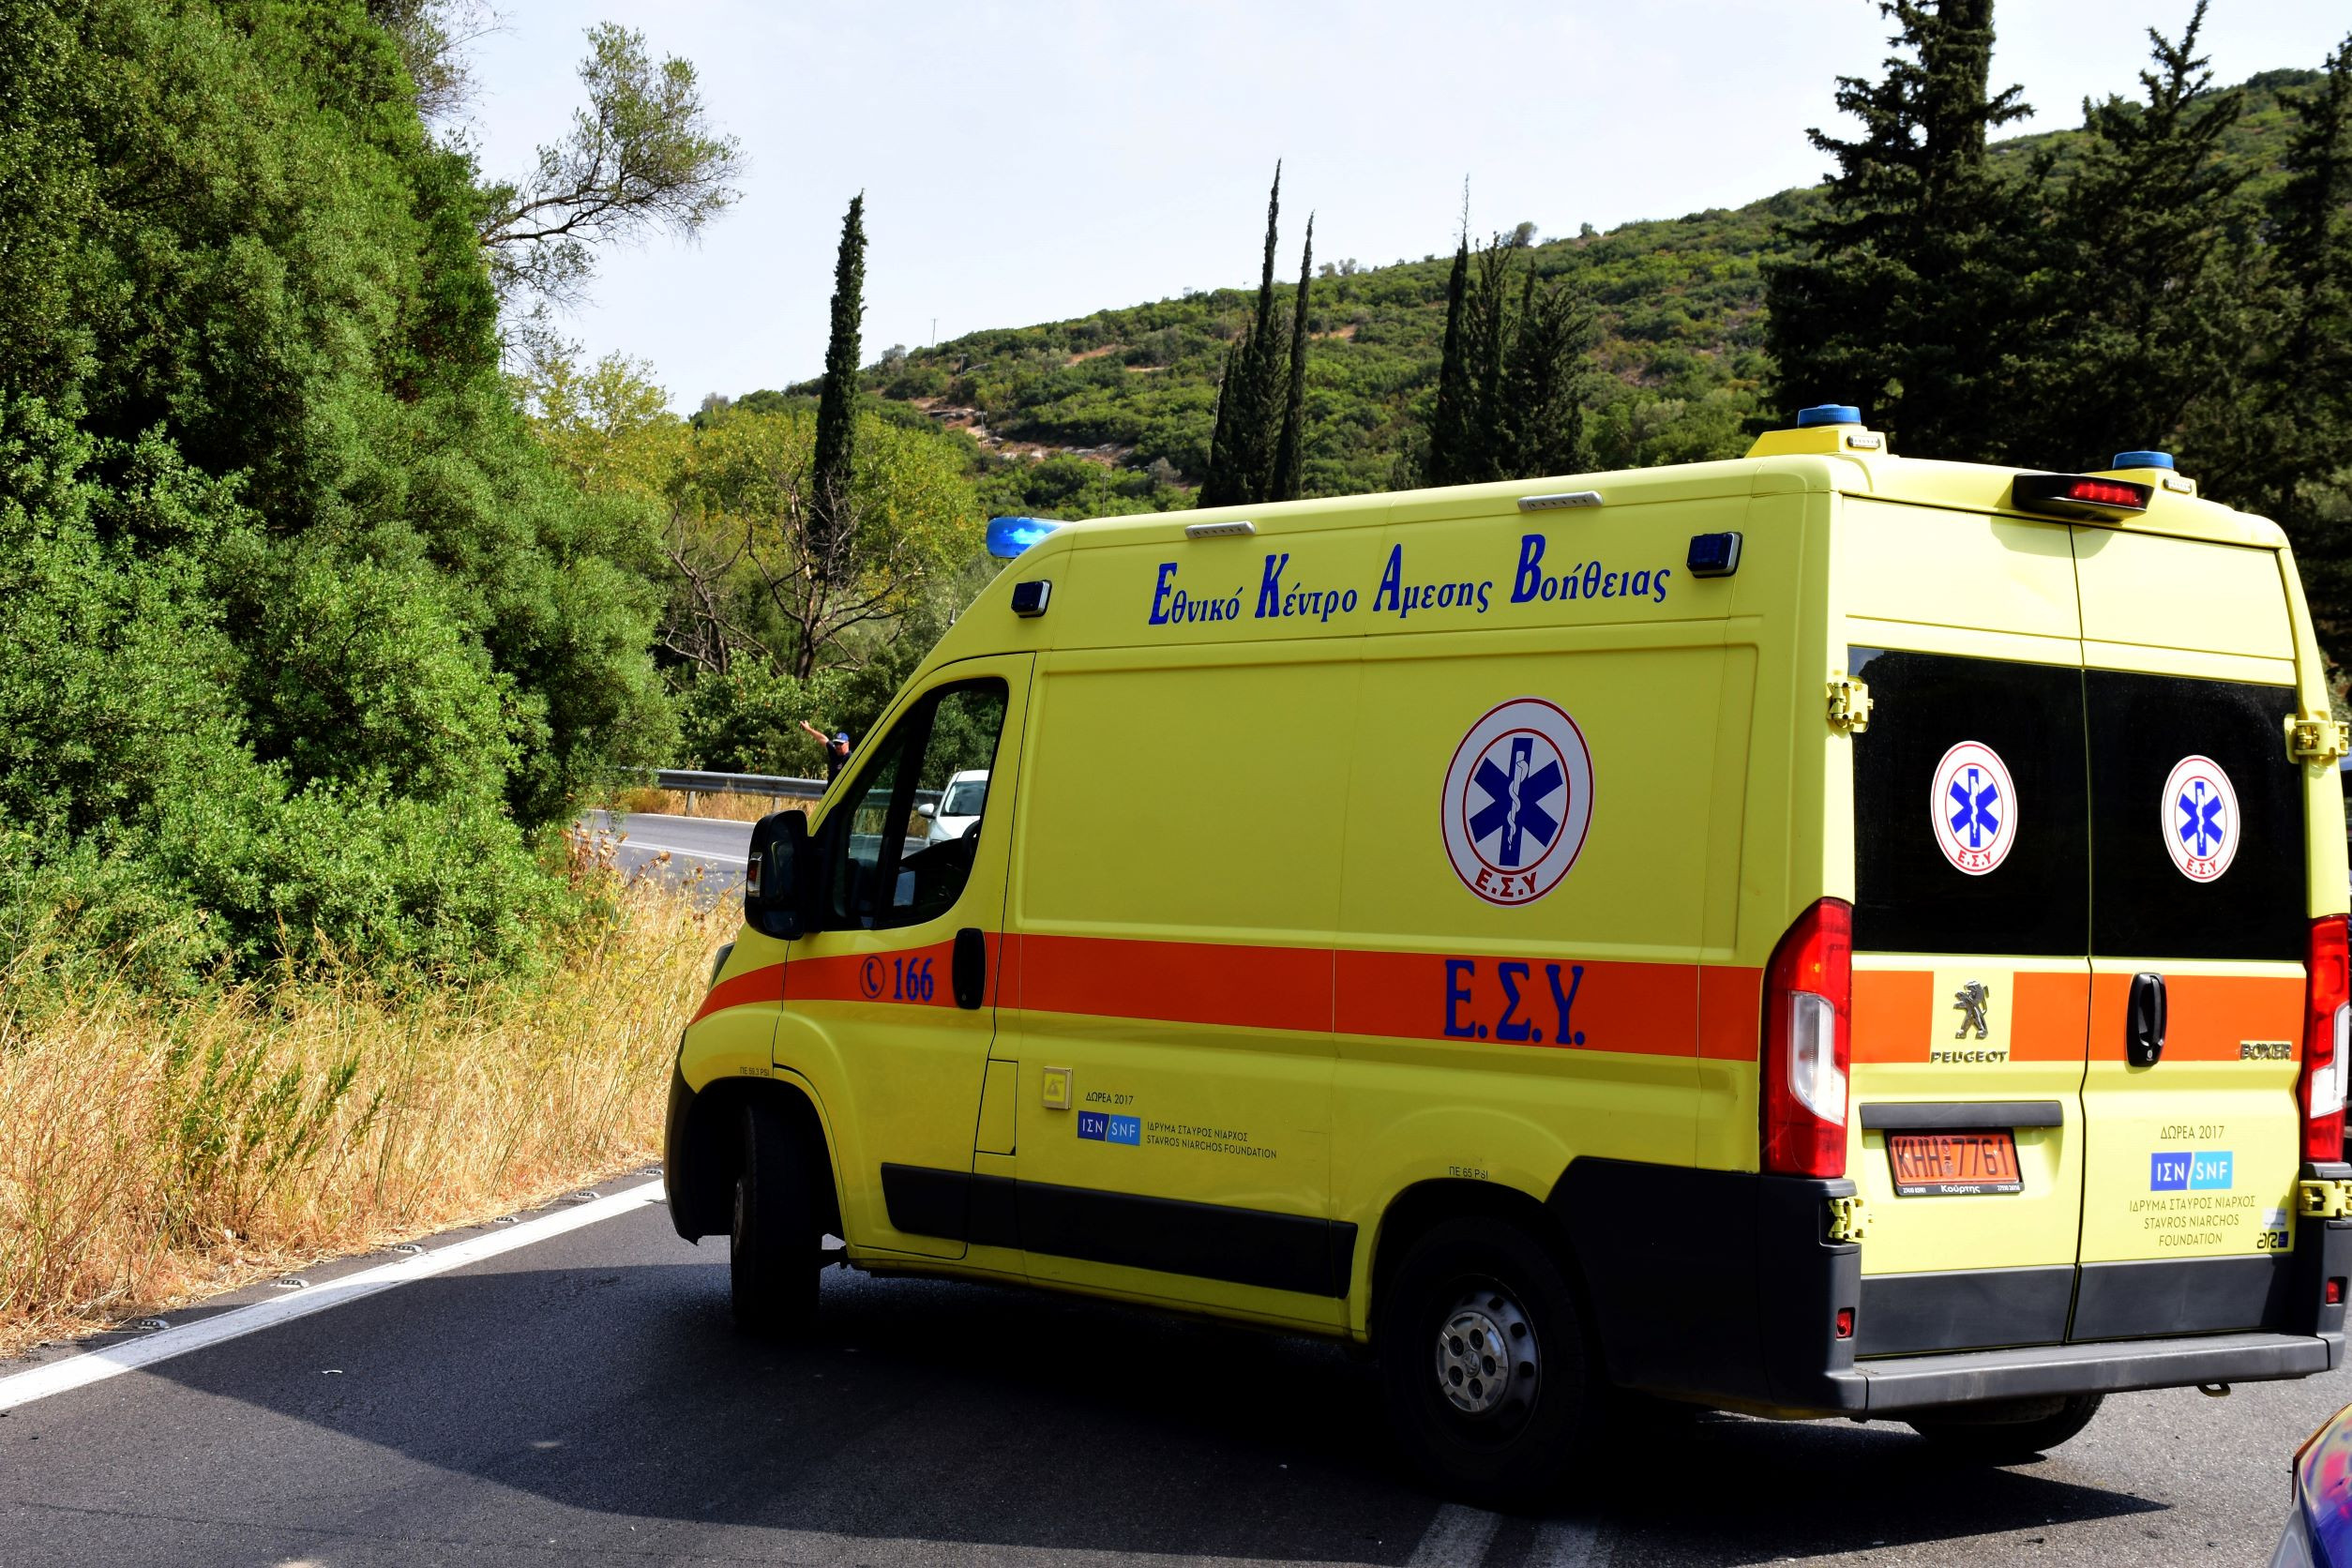 Καστοριά: Νεκρός άνδρας που έπεσε σε κανάλι με το αυτοκίνητο